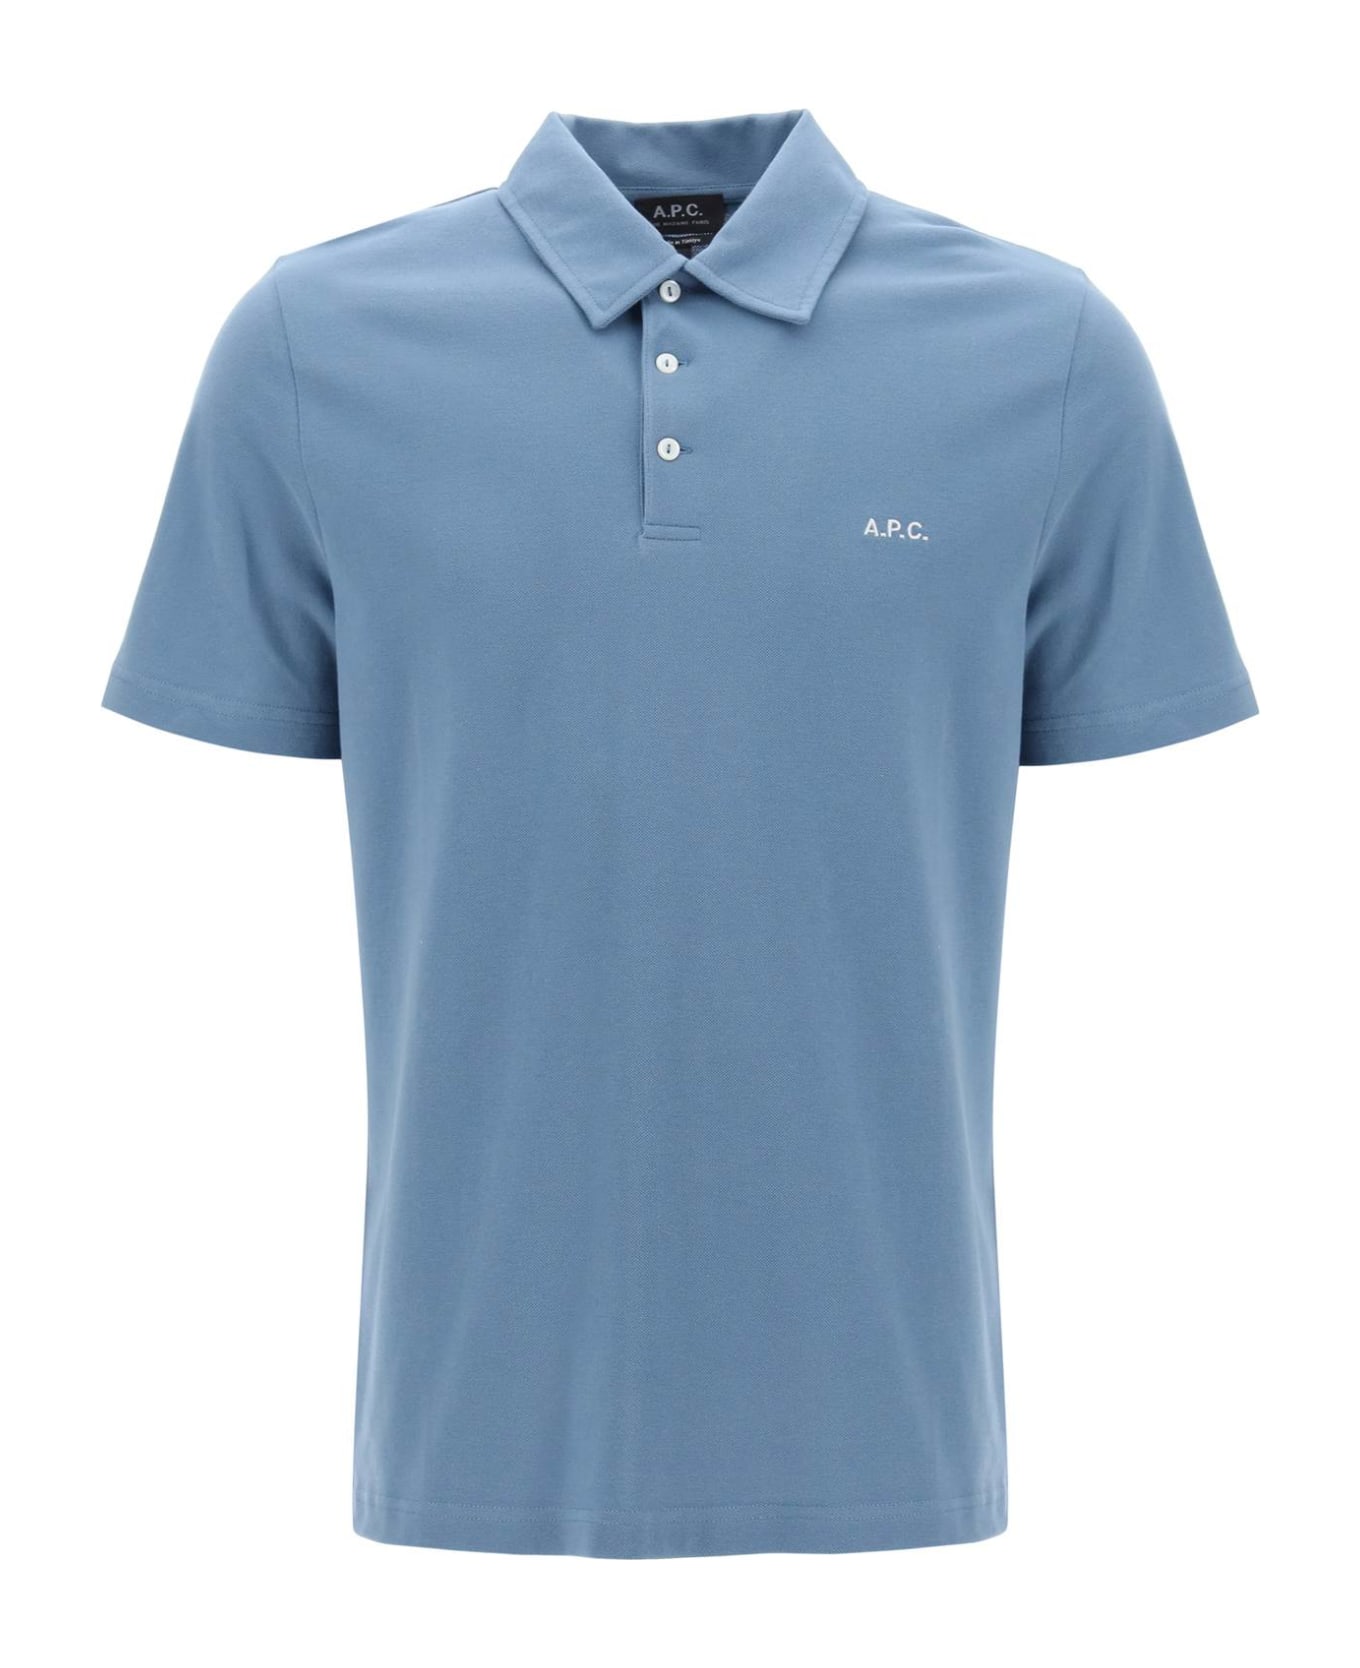 A.P.C. Austin Polo Shirt - BLUE GRIS (Light blue) ポロシャツ